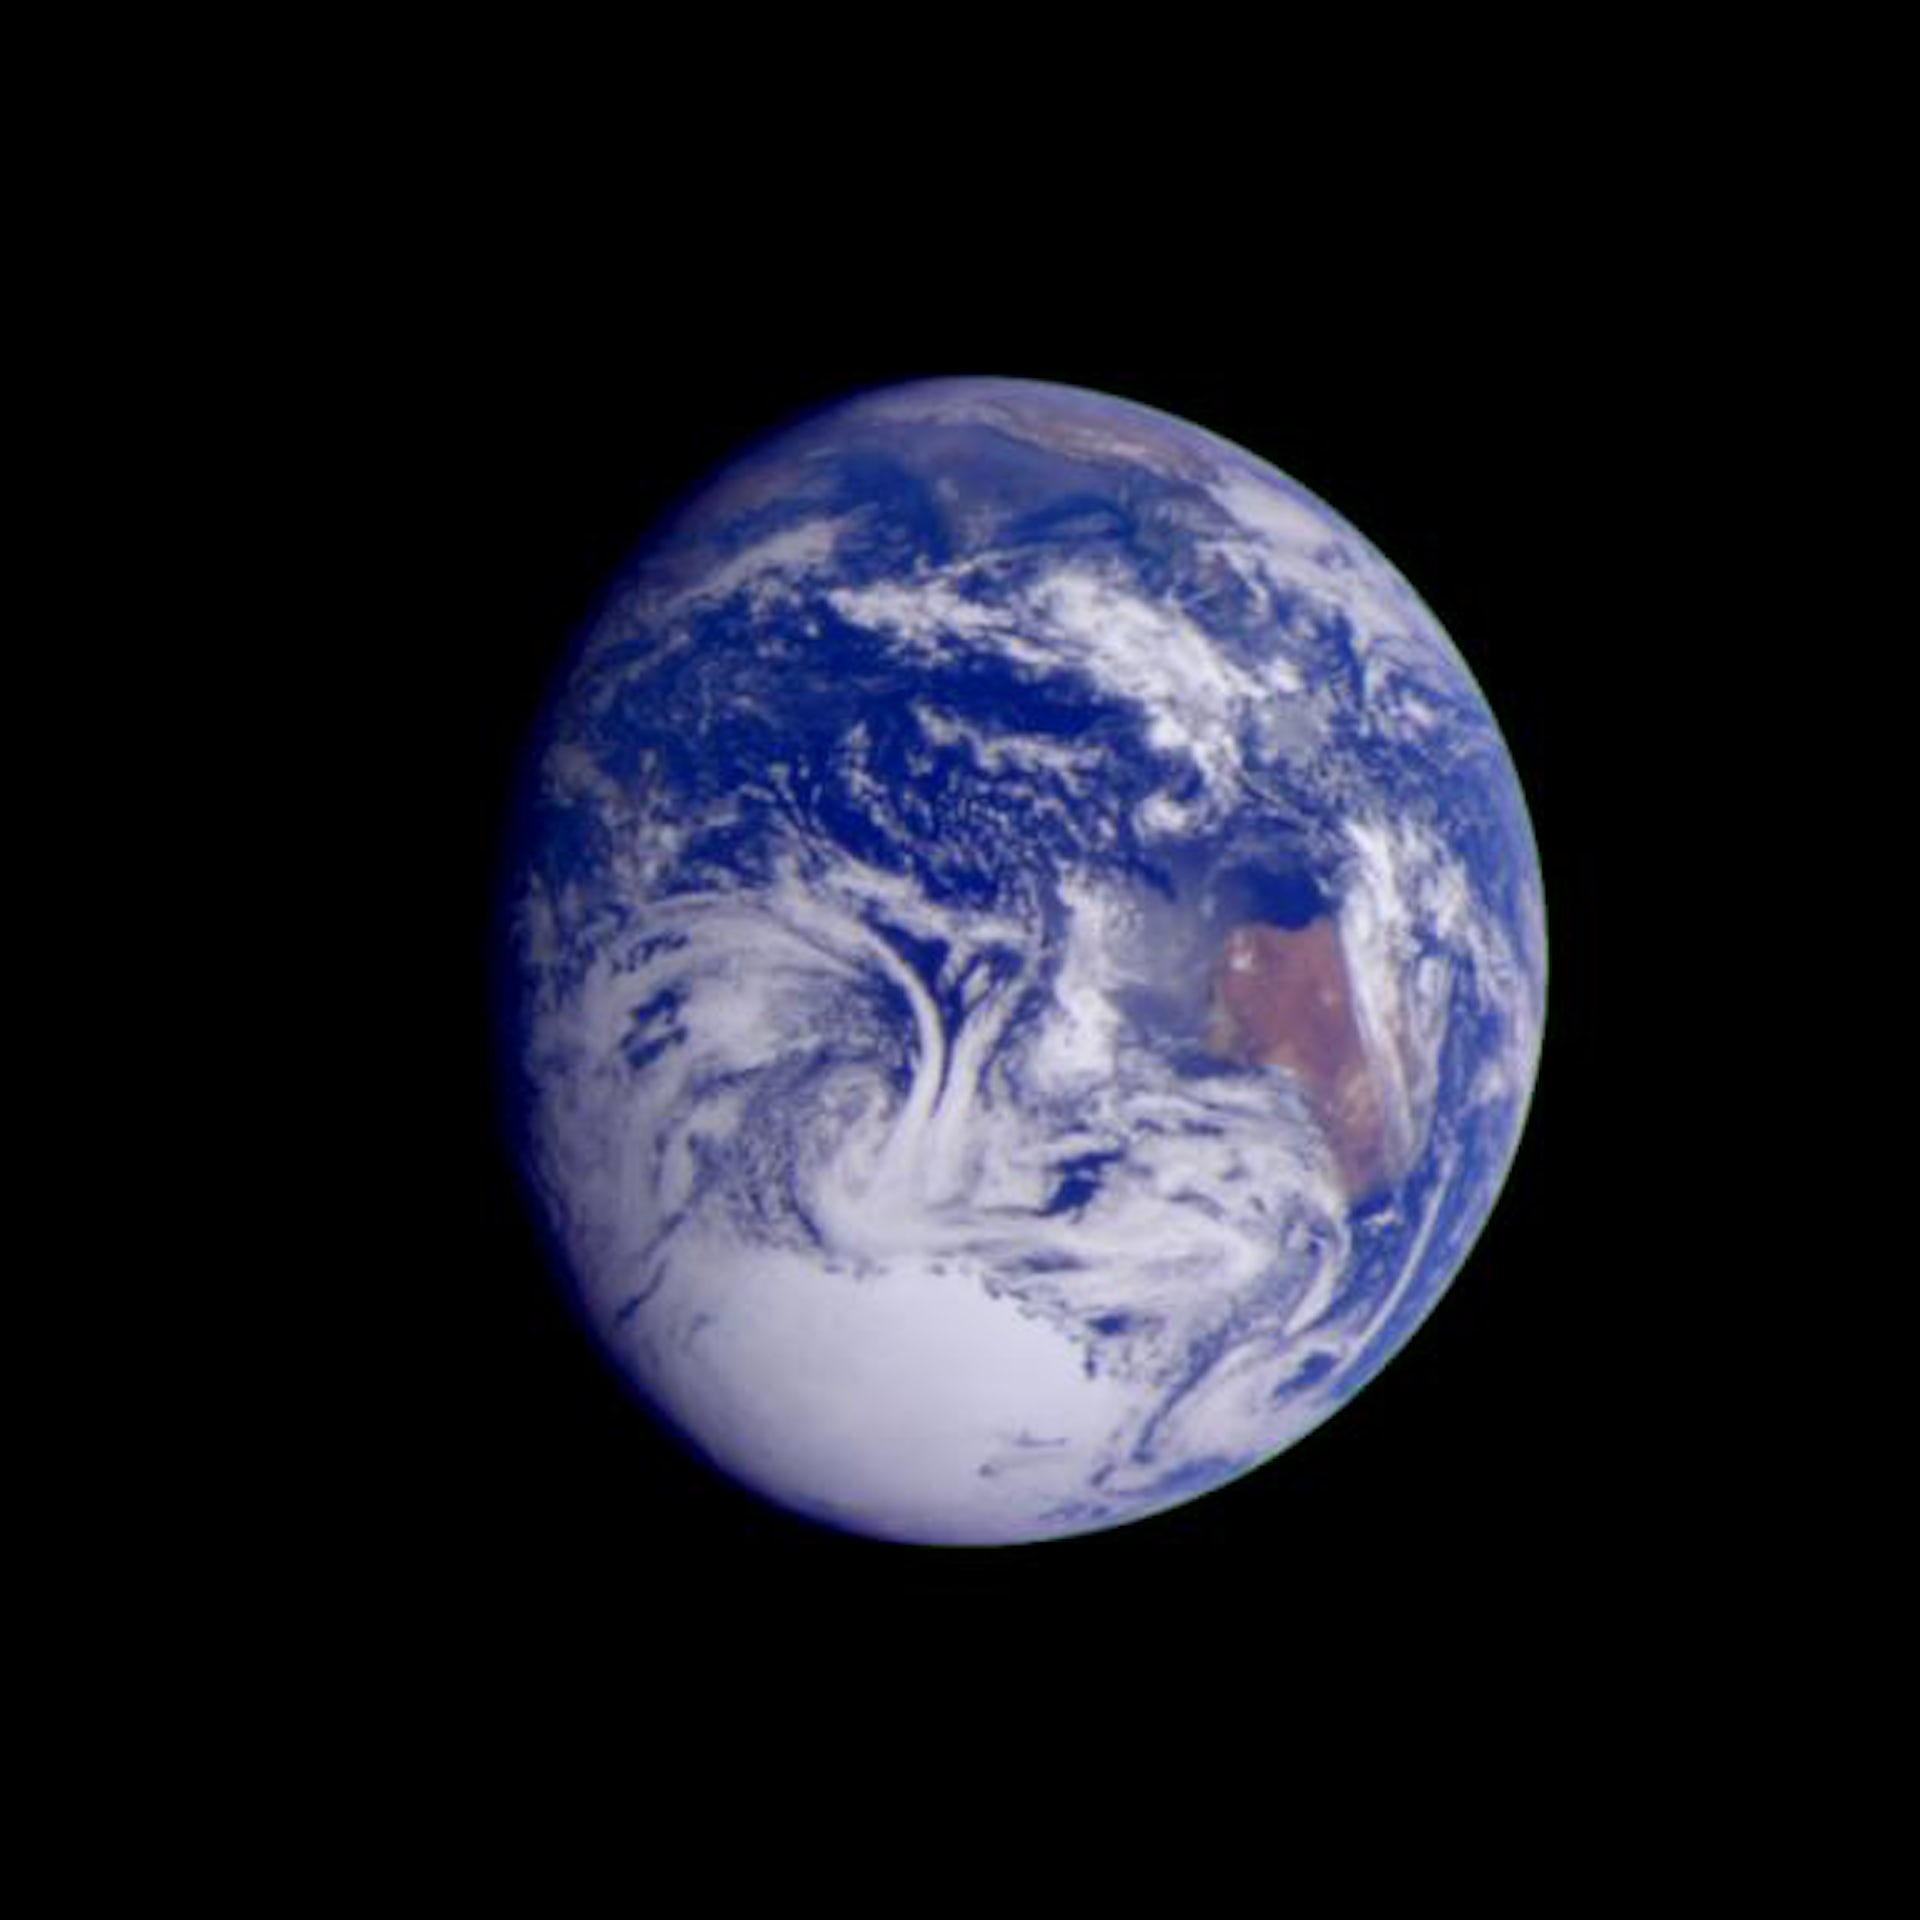 תמונה שצולמה על ידי חללית גלילאו במרחק של 2.4 מיליון ק"מ.